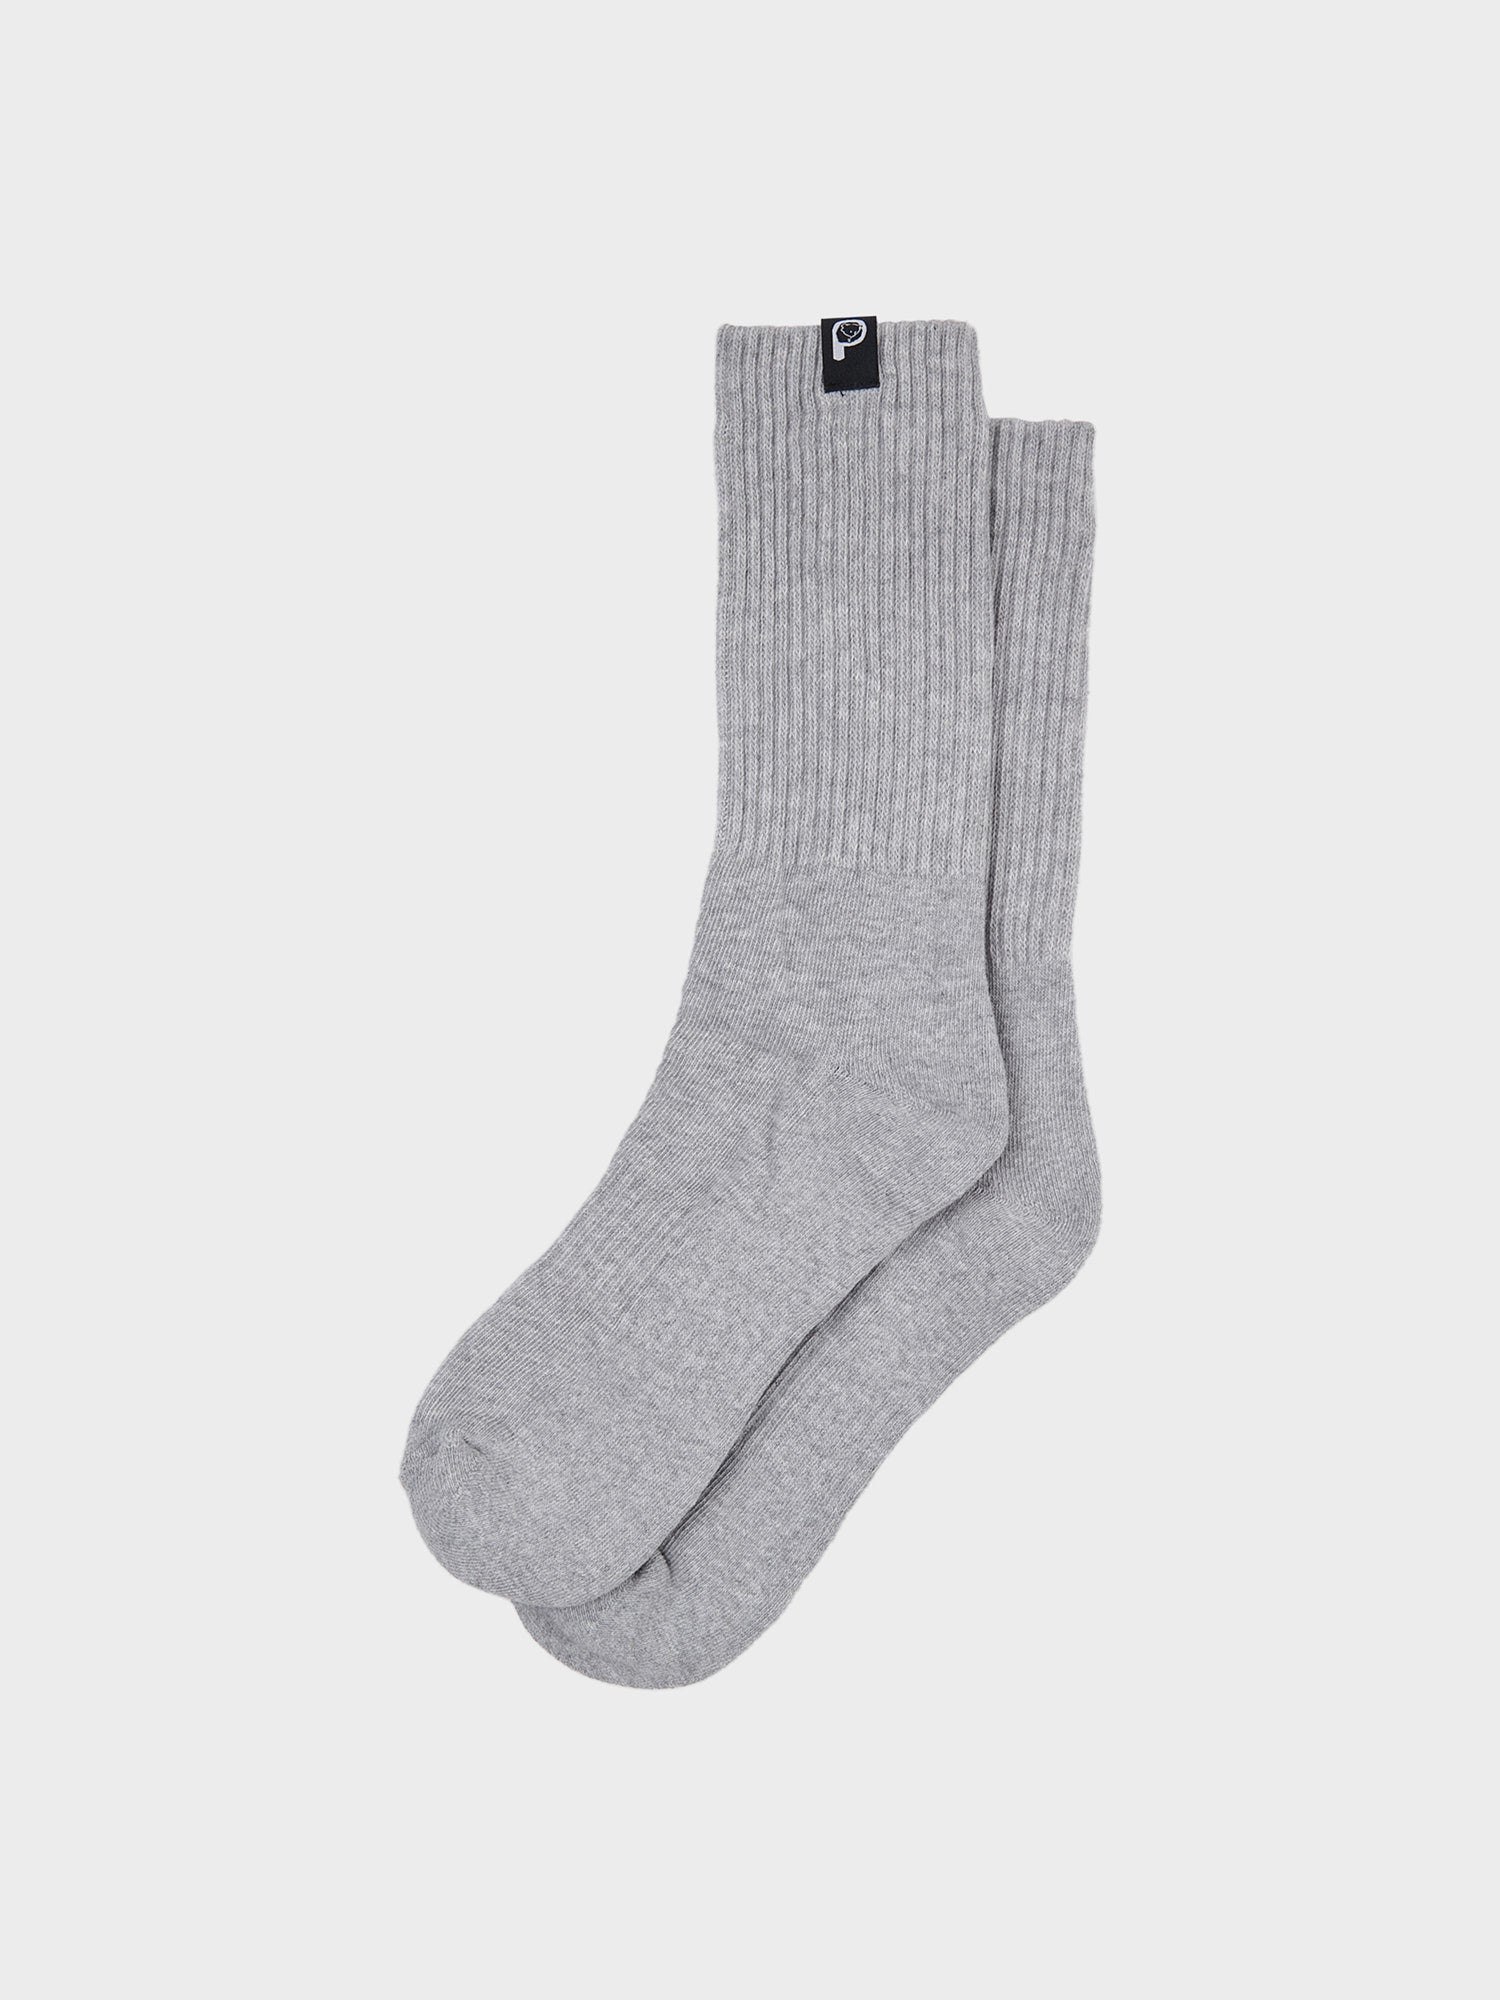 2 Pack Socks in Vintage Grey Heather